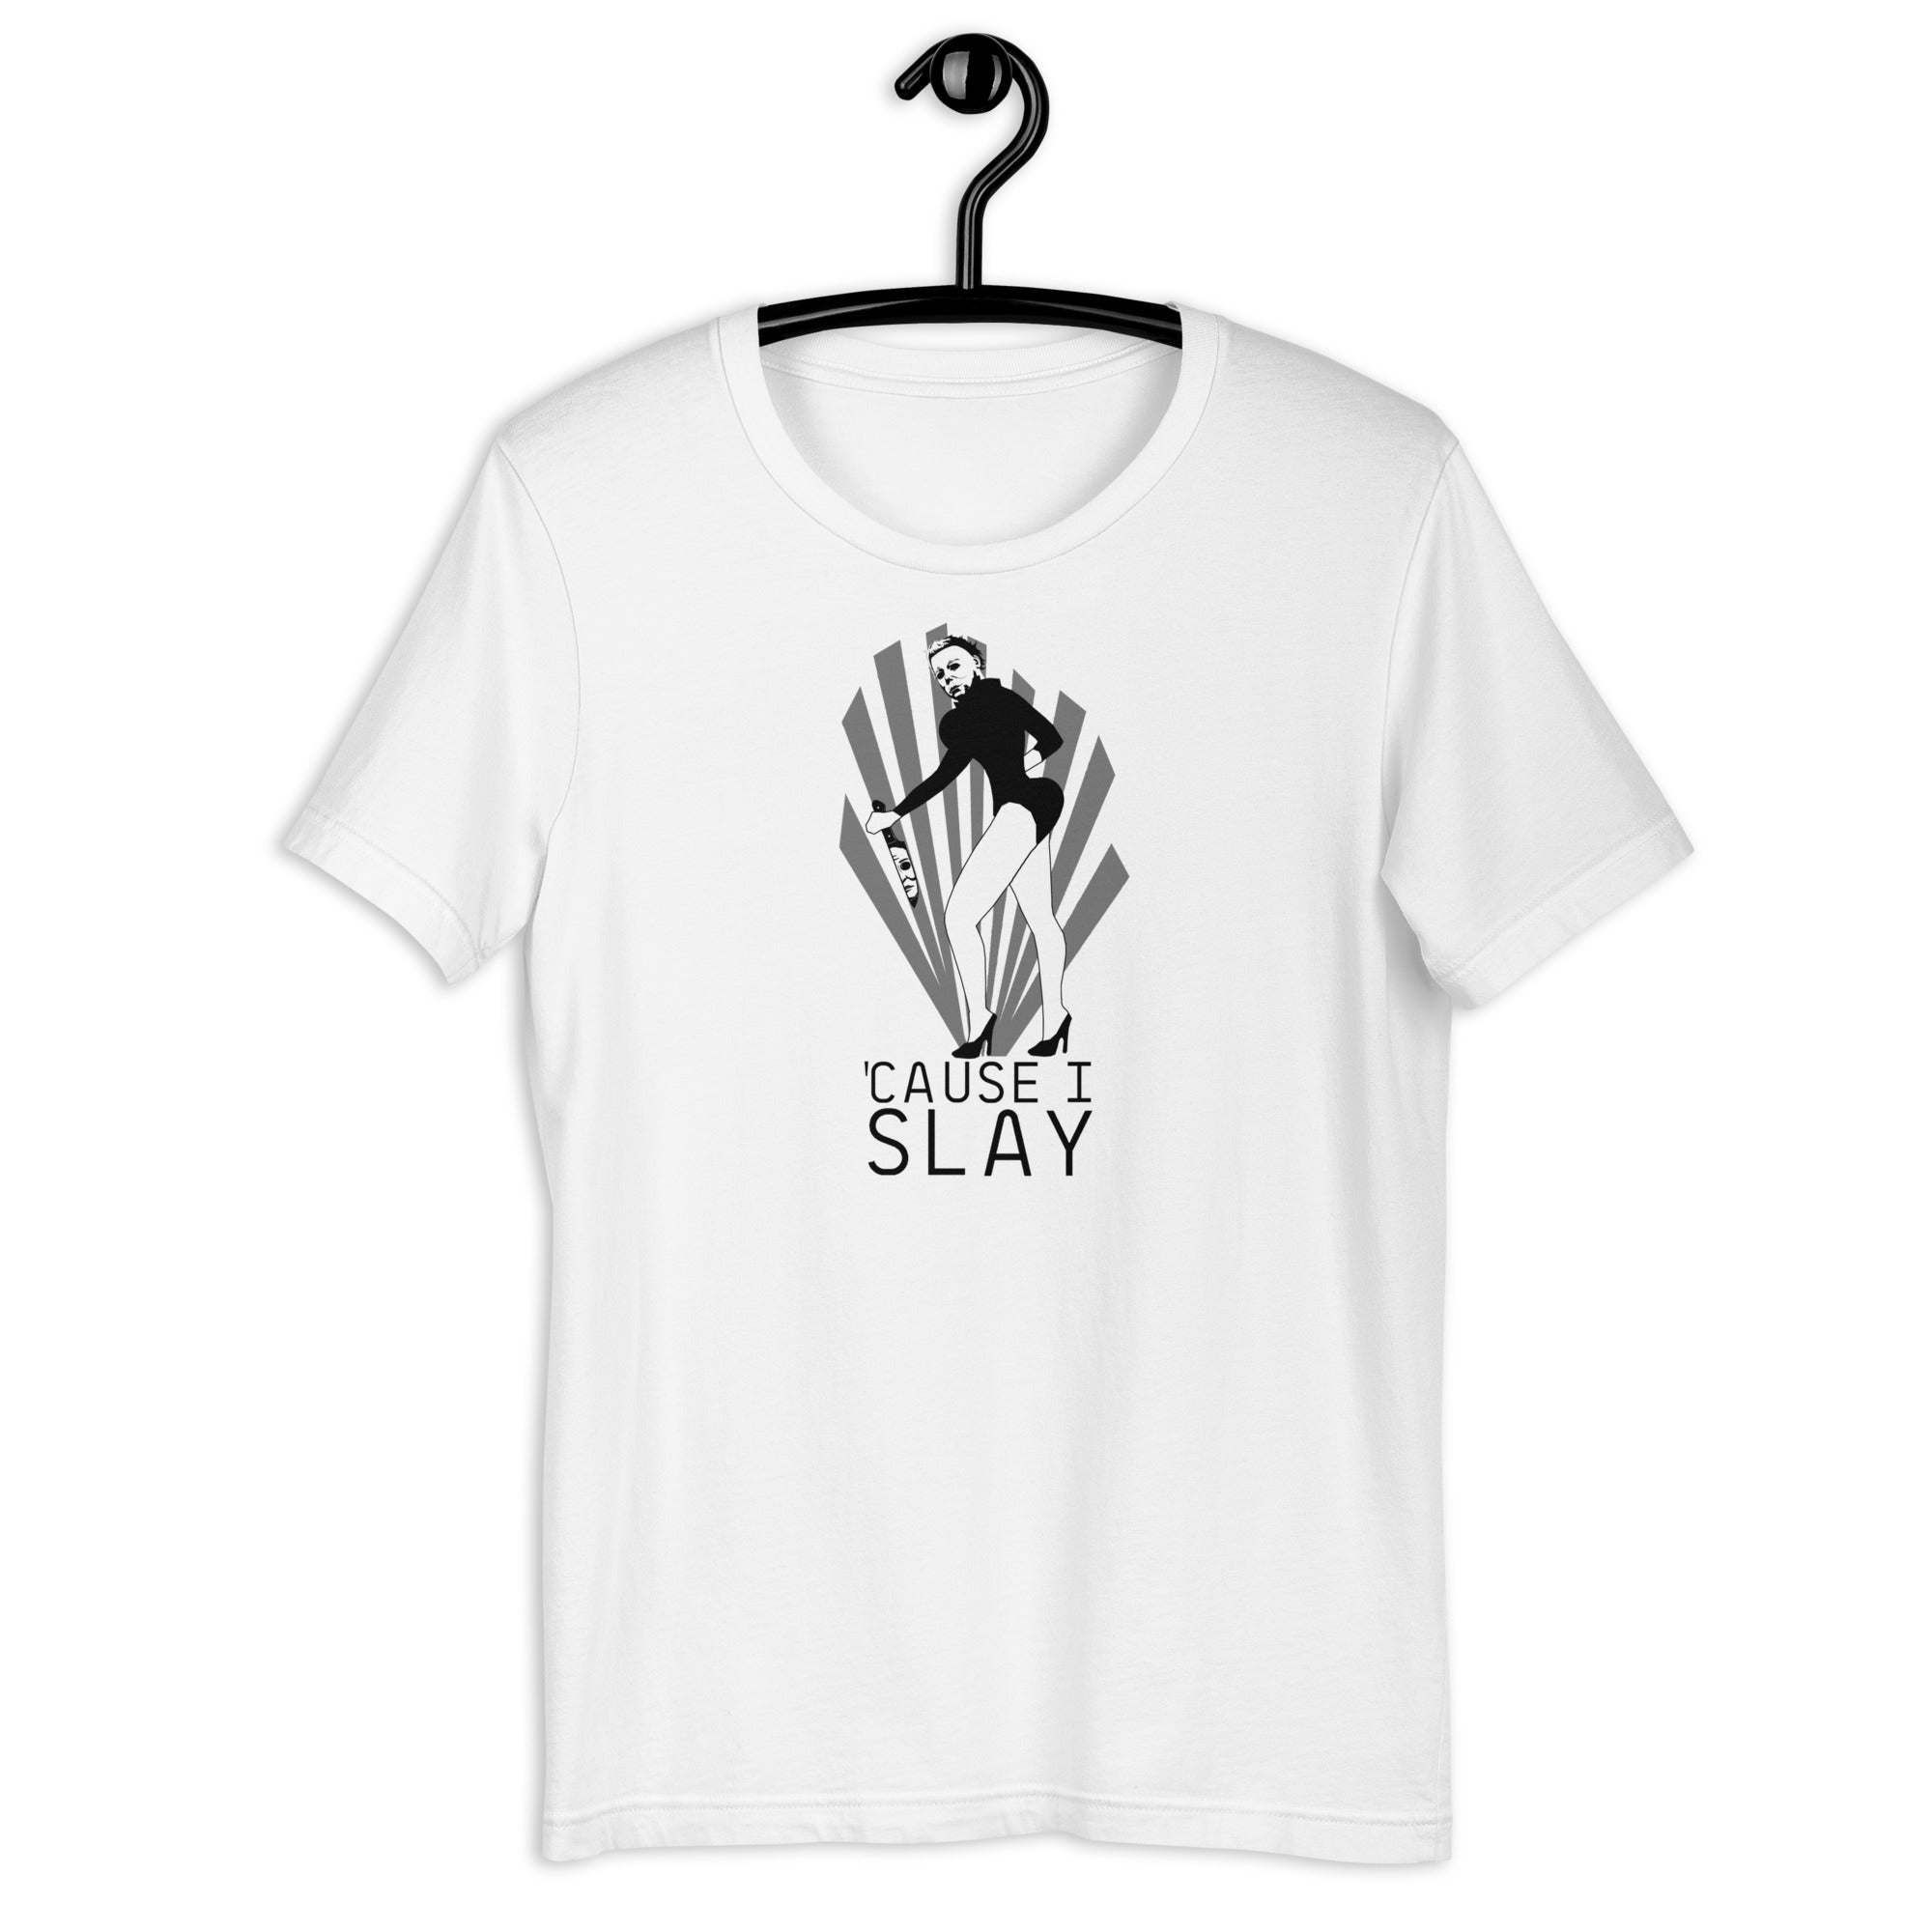 SLAY TEES CANADA - 'CAUSE I SLAY TEE